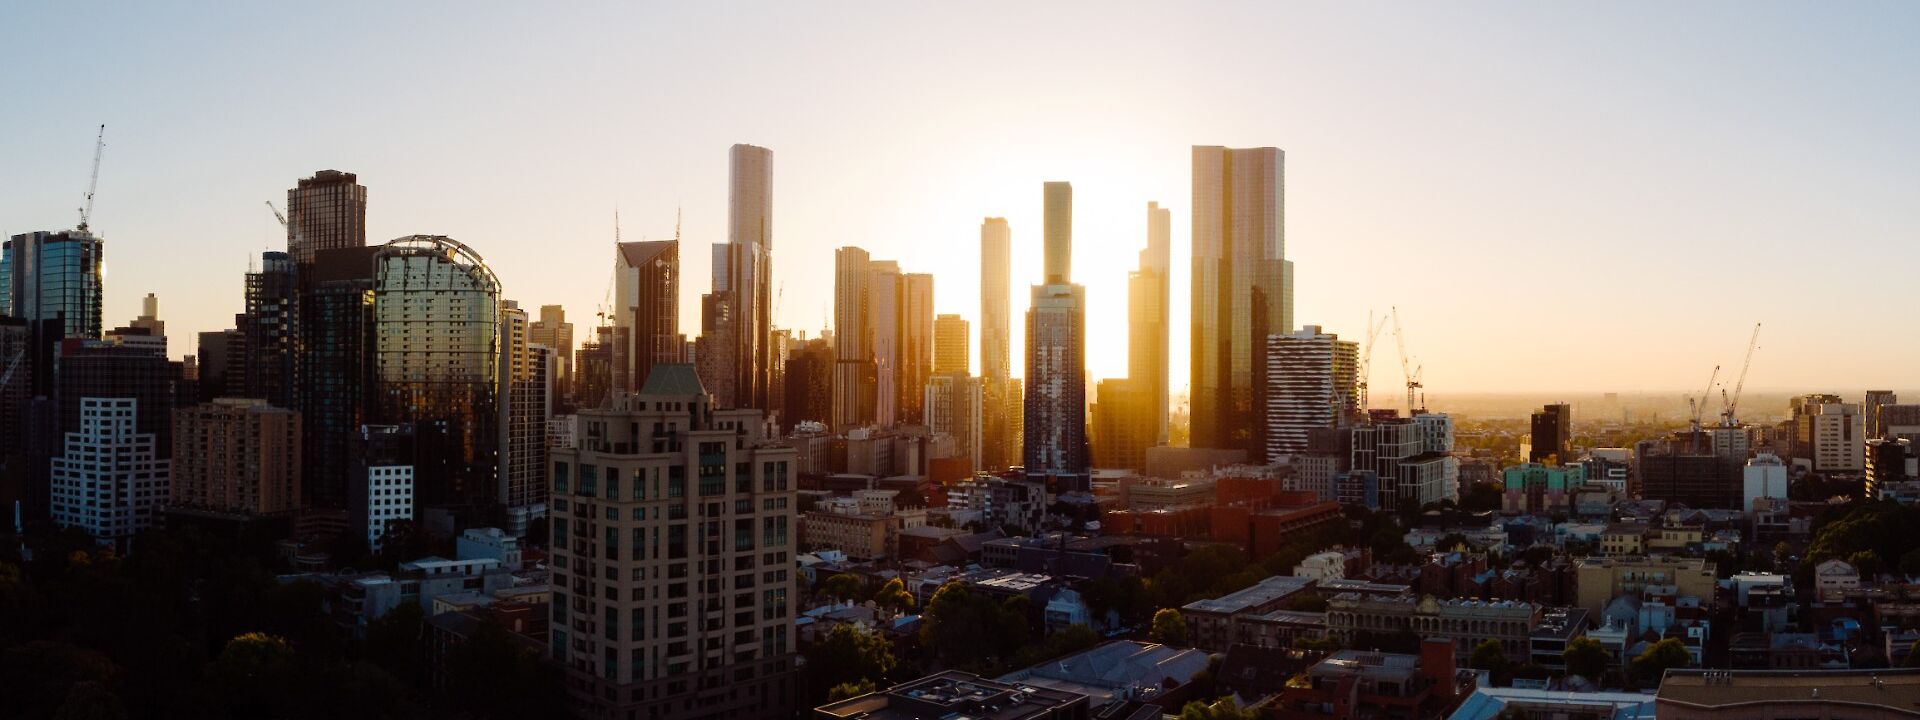 Melbourne Skyline at Dawn, Melbourne, Australia. Unsplash: Wolf Zimmermann